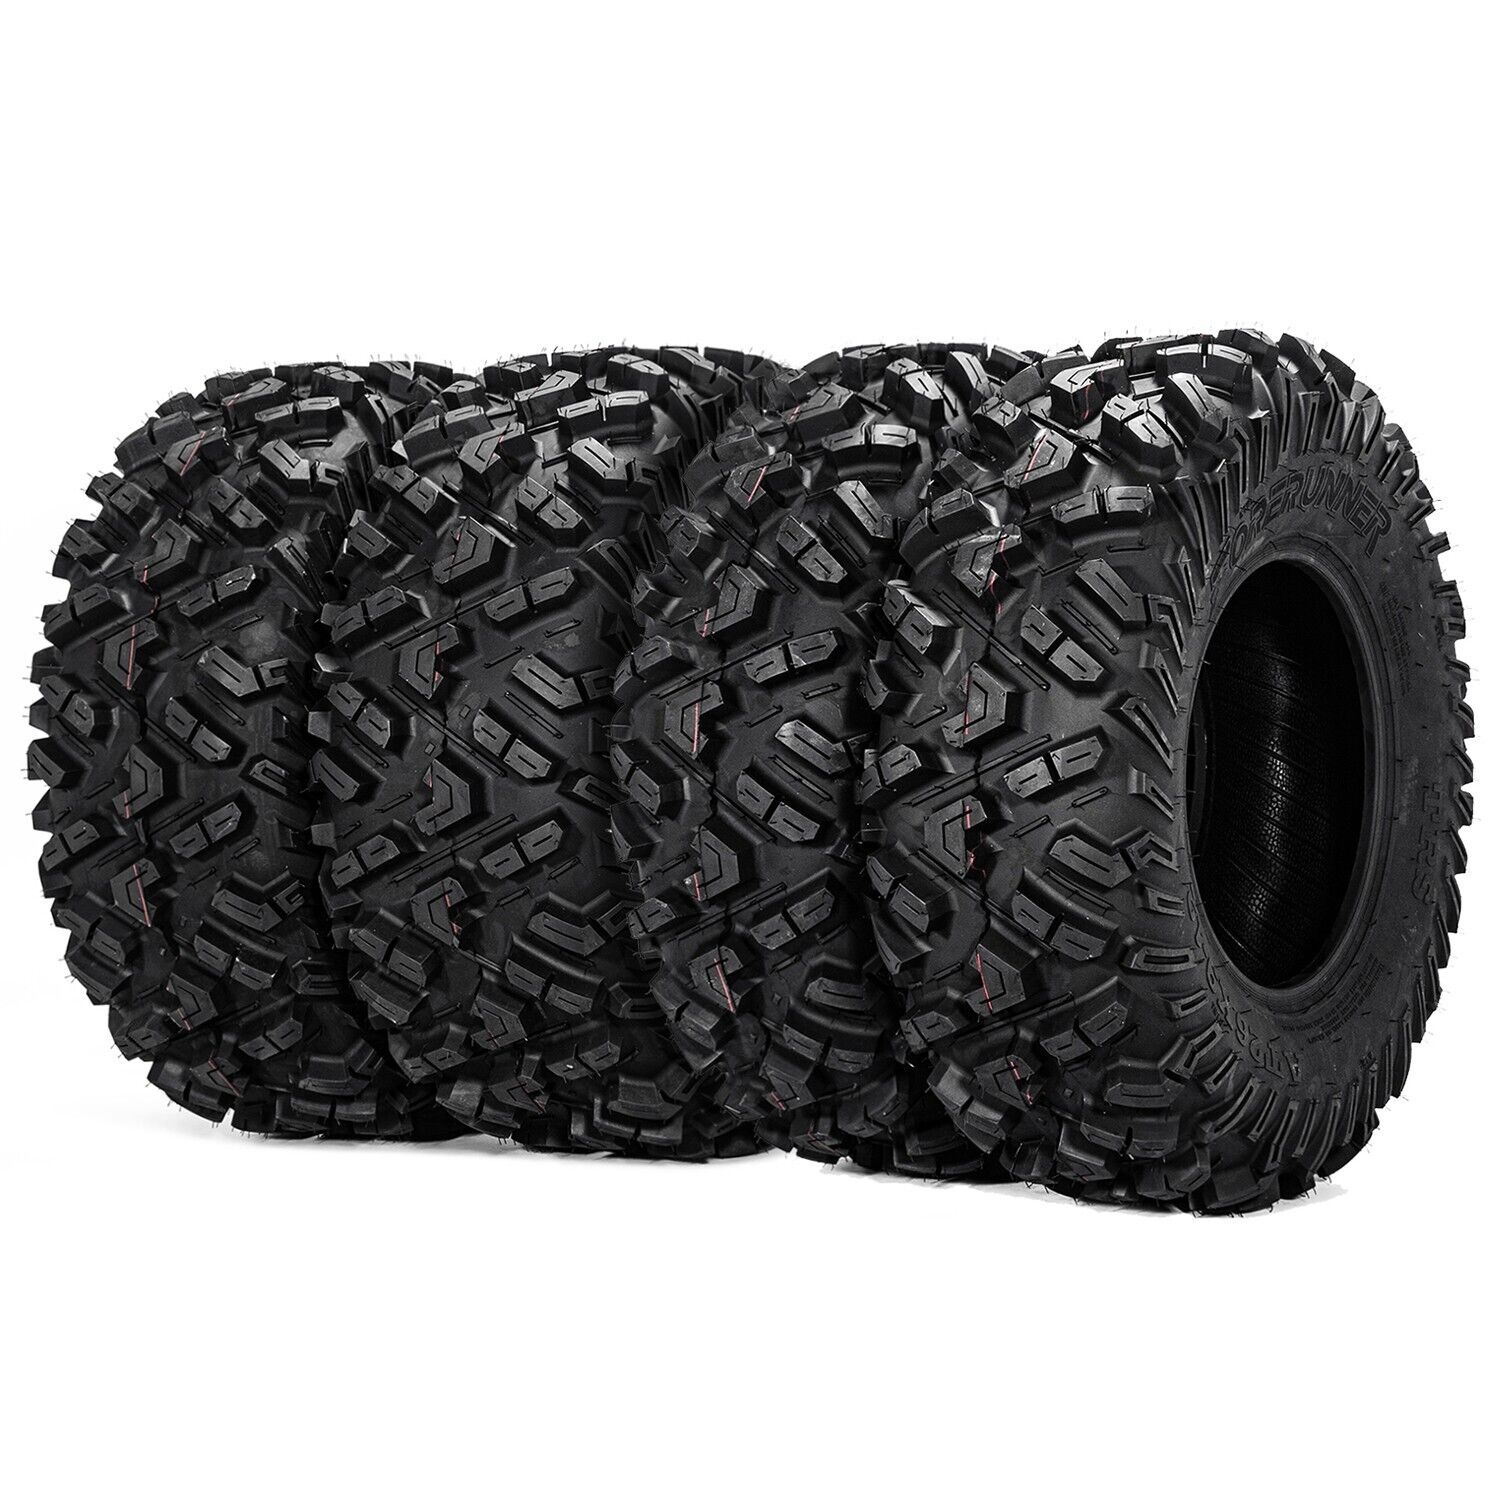 26x11-12 26x9-12 ATV UTV Mud Tires 26 R12 6 ply 26x9x12 26x11x12 Front Rear Set